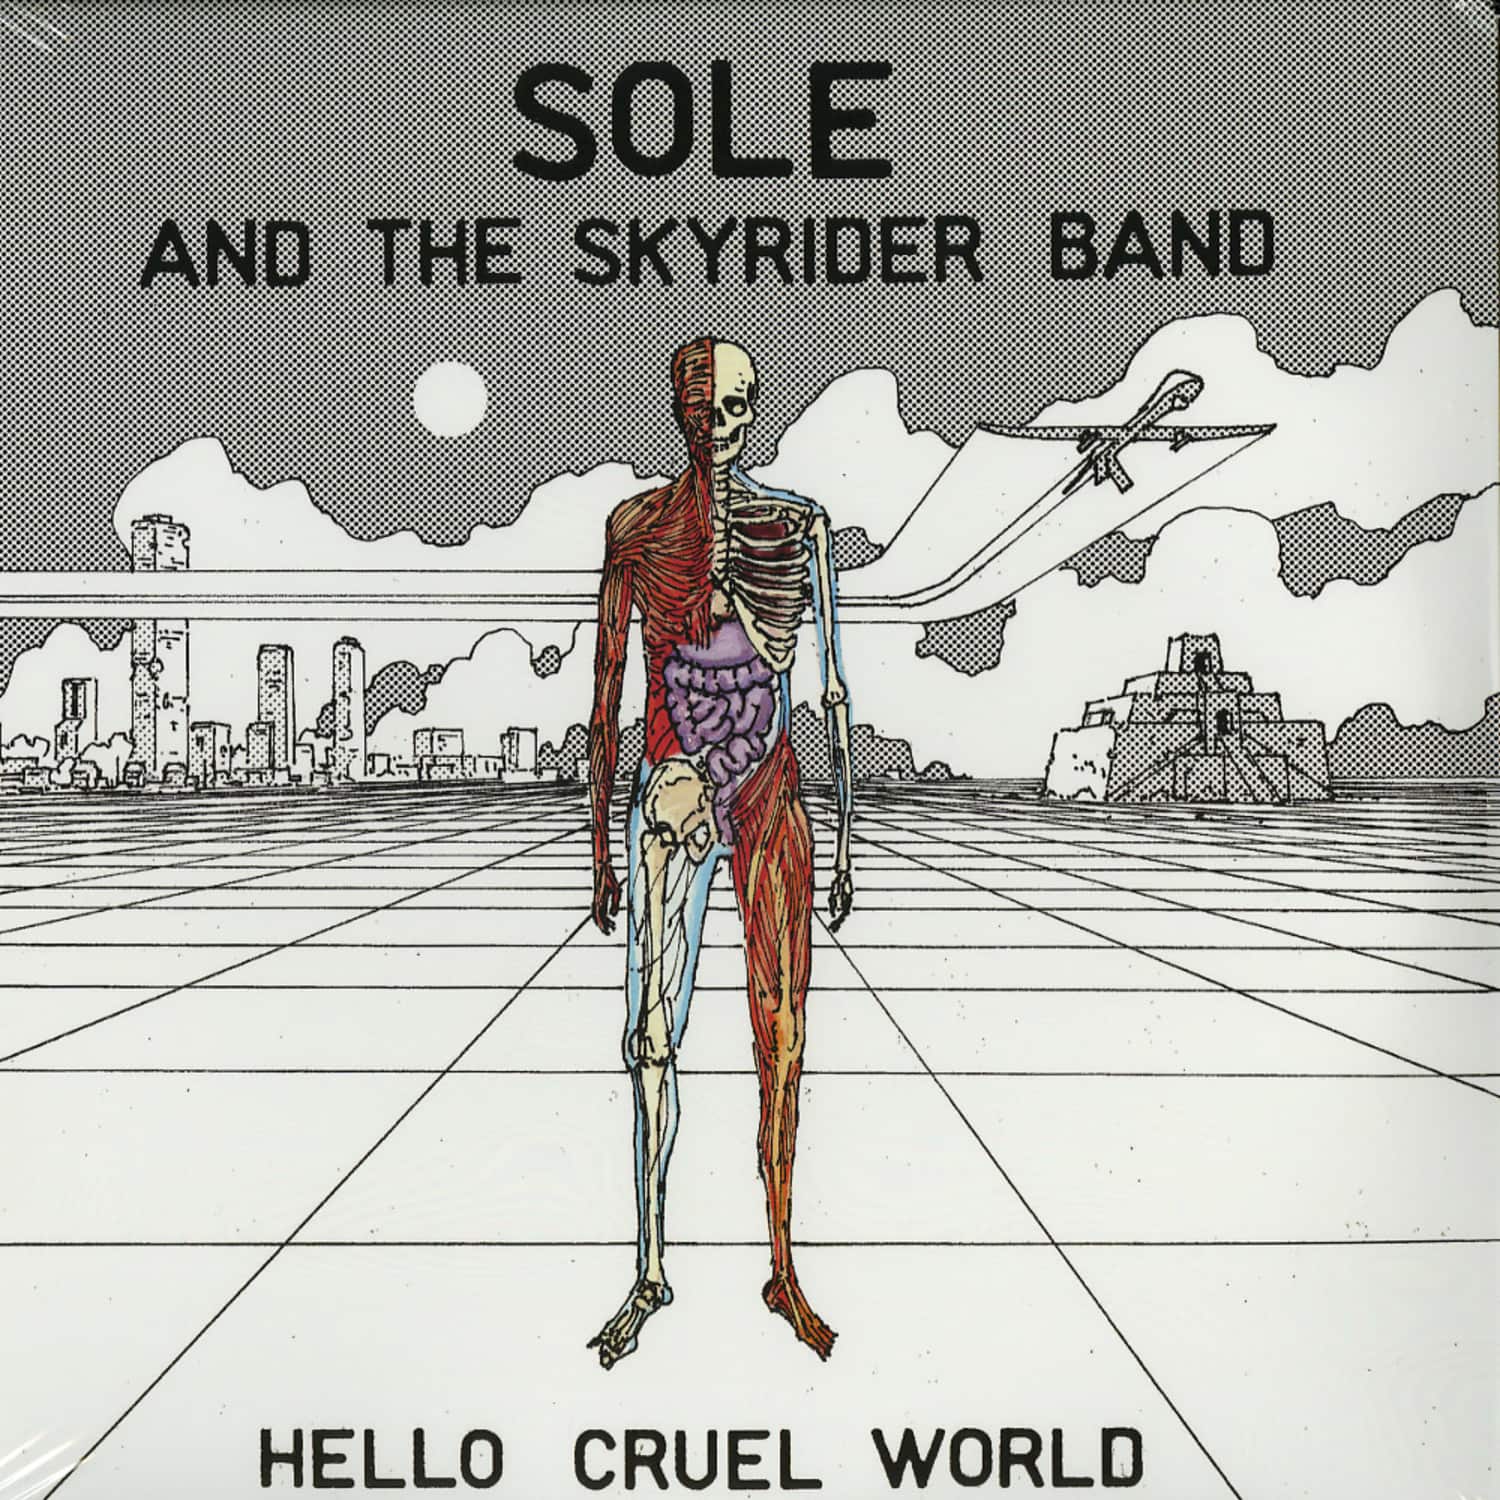 Sole And The Skyrider Band - HELLO CRUEL WORLD 